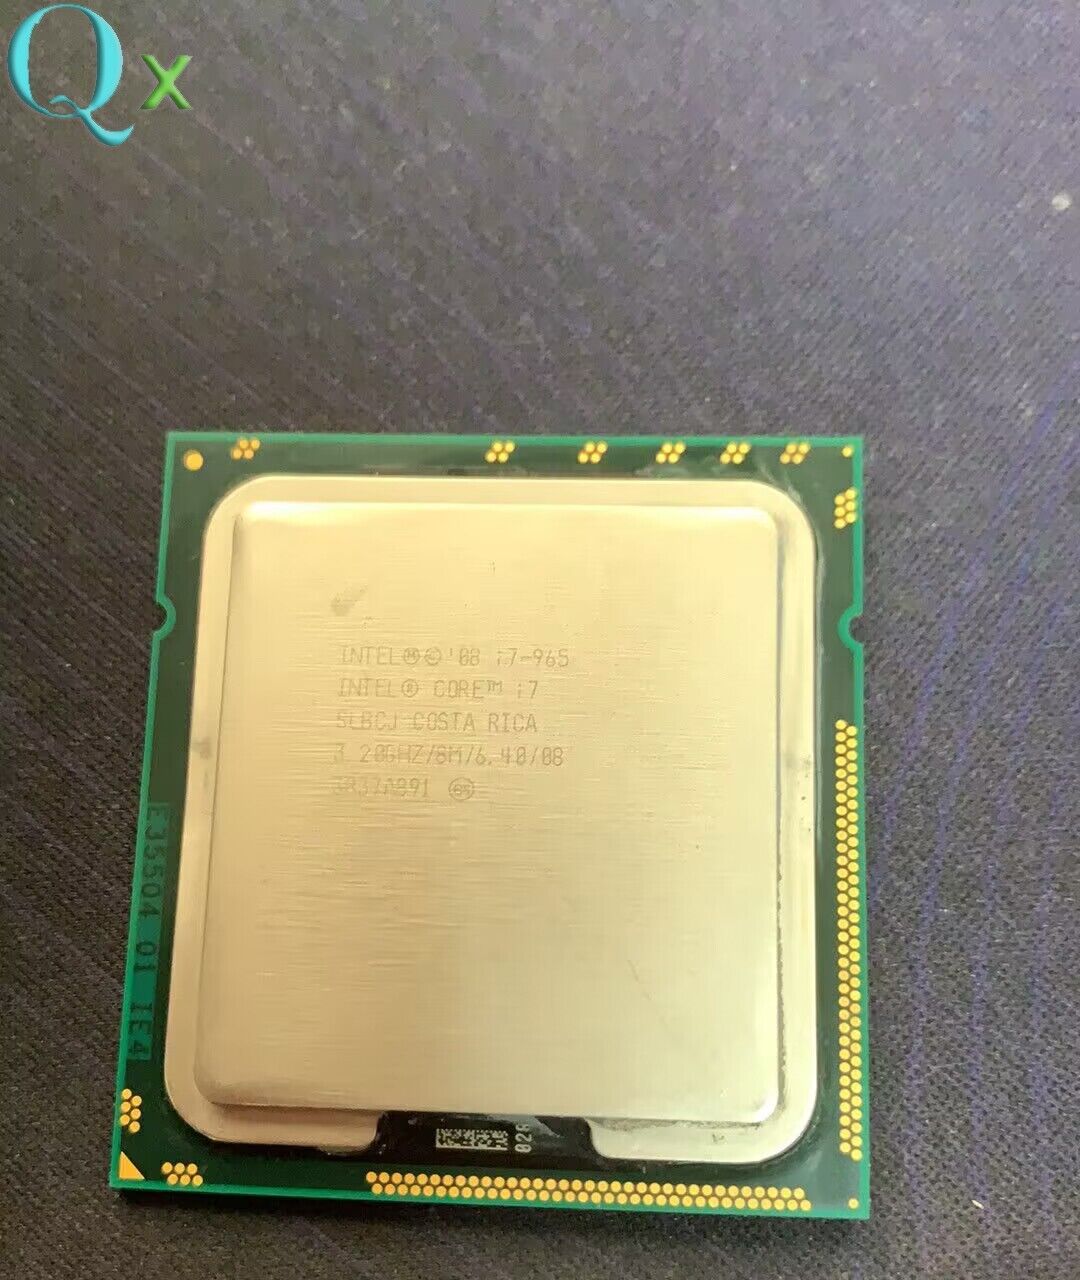 Intel Core i7-965 LGA1366 CPU Processor Extreme Edition 3.2GHz Quad Core 8M 130W